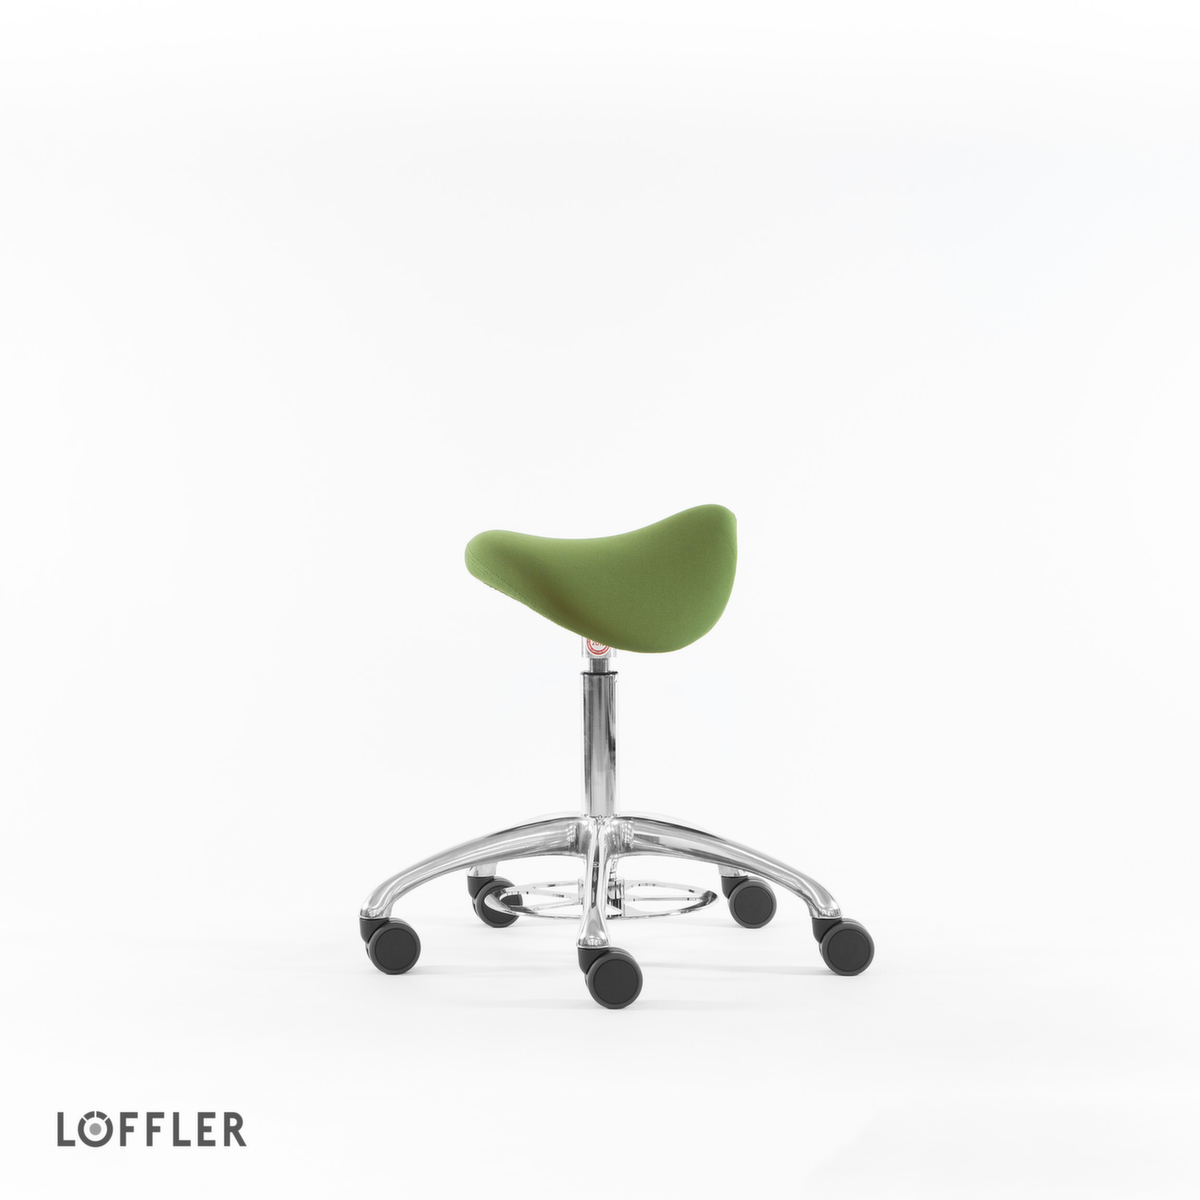 Löffler Sattelsitzhocker Sedlo mit Fußauslösung, Sitz grün, Rollen Standard 2 ZOOM